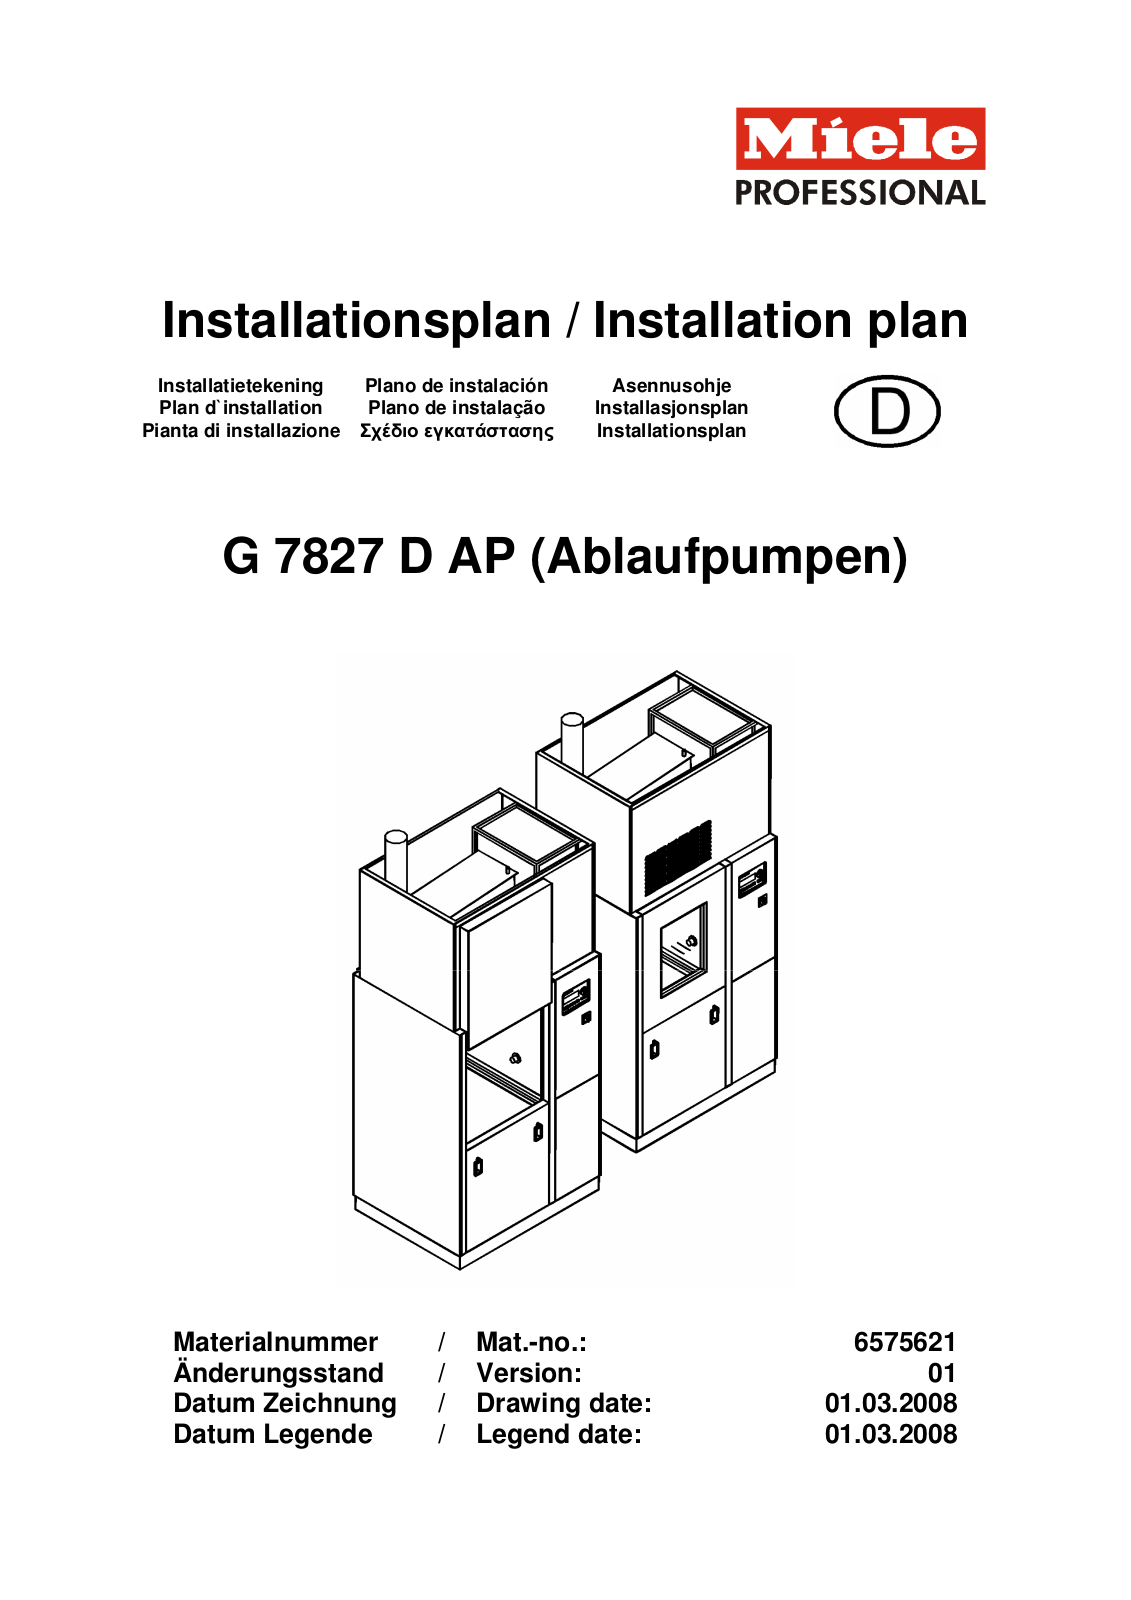 Miele G 7827 D AP Installation diagram